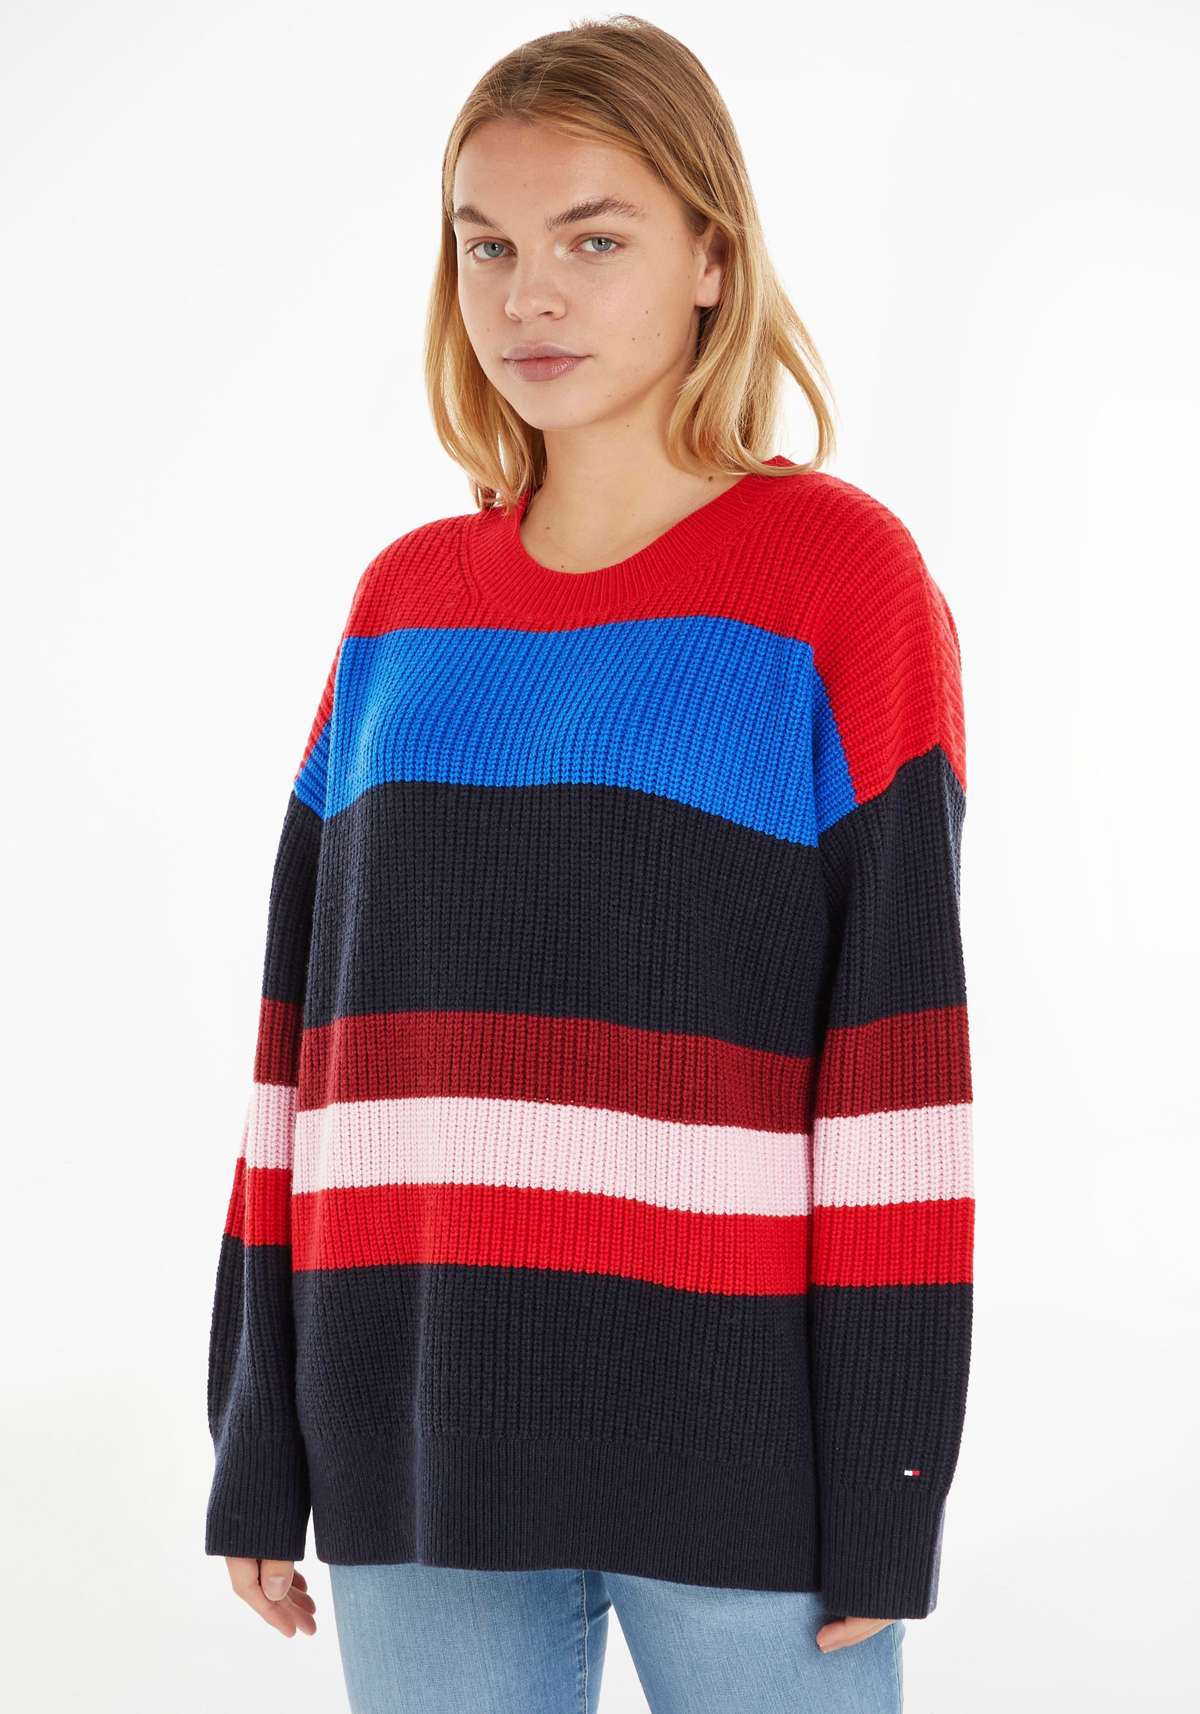 Вязаный свитер с узором в разноцветные блочные полосы.